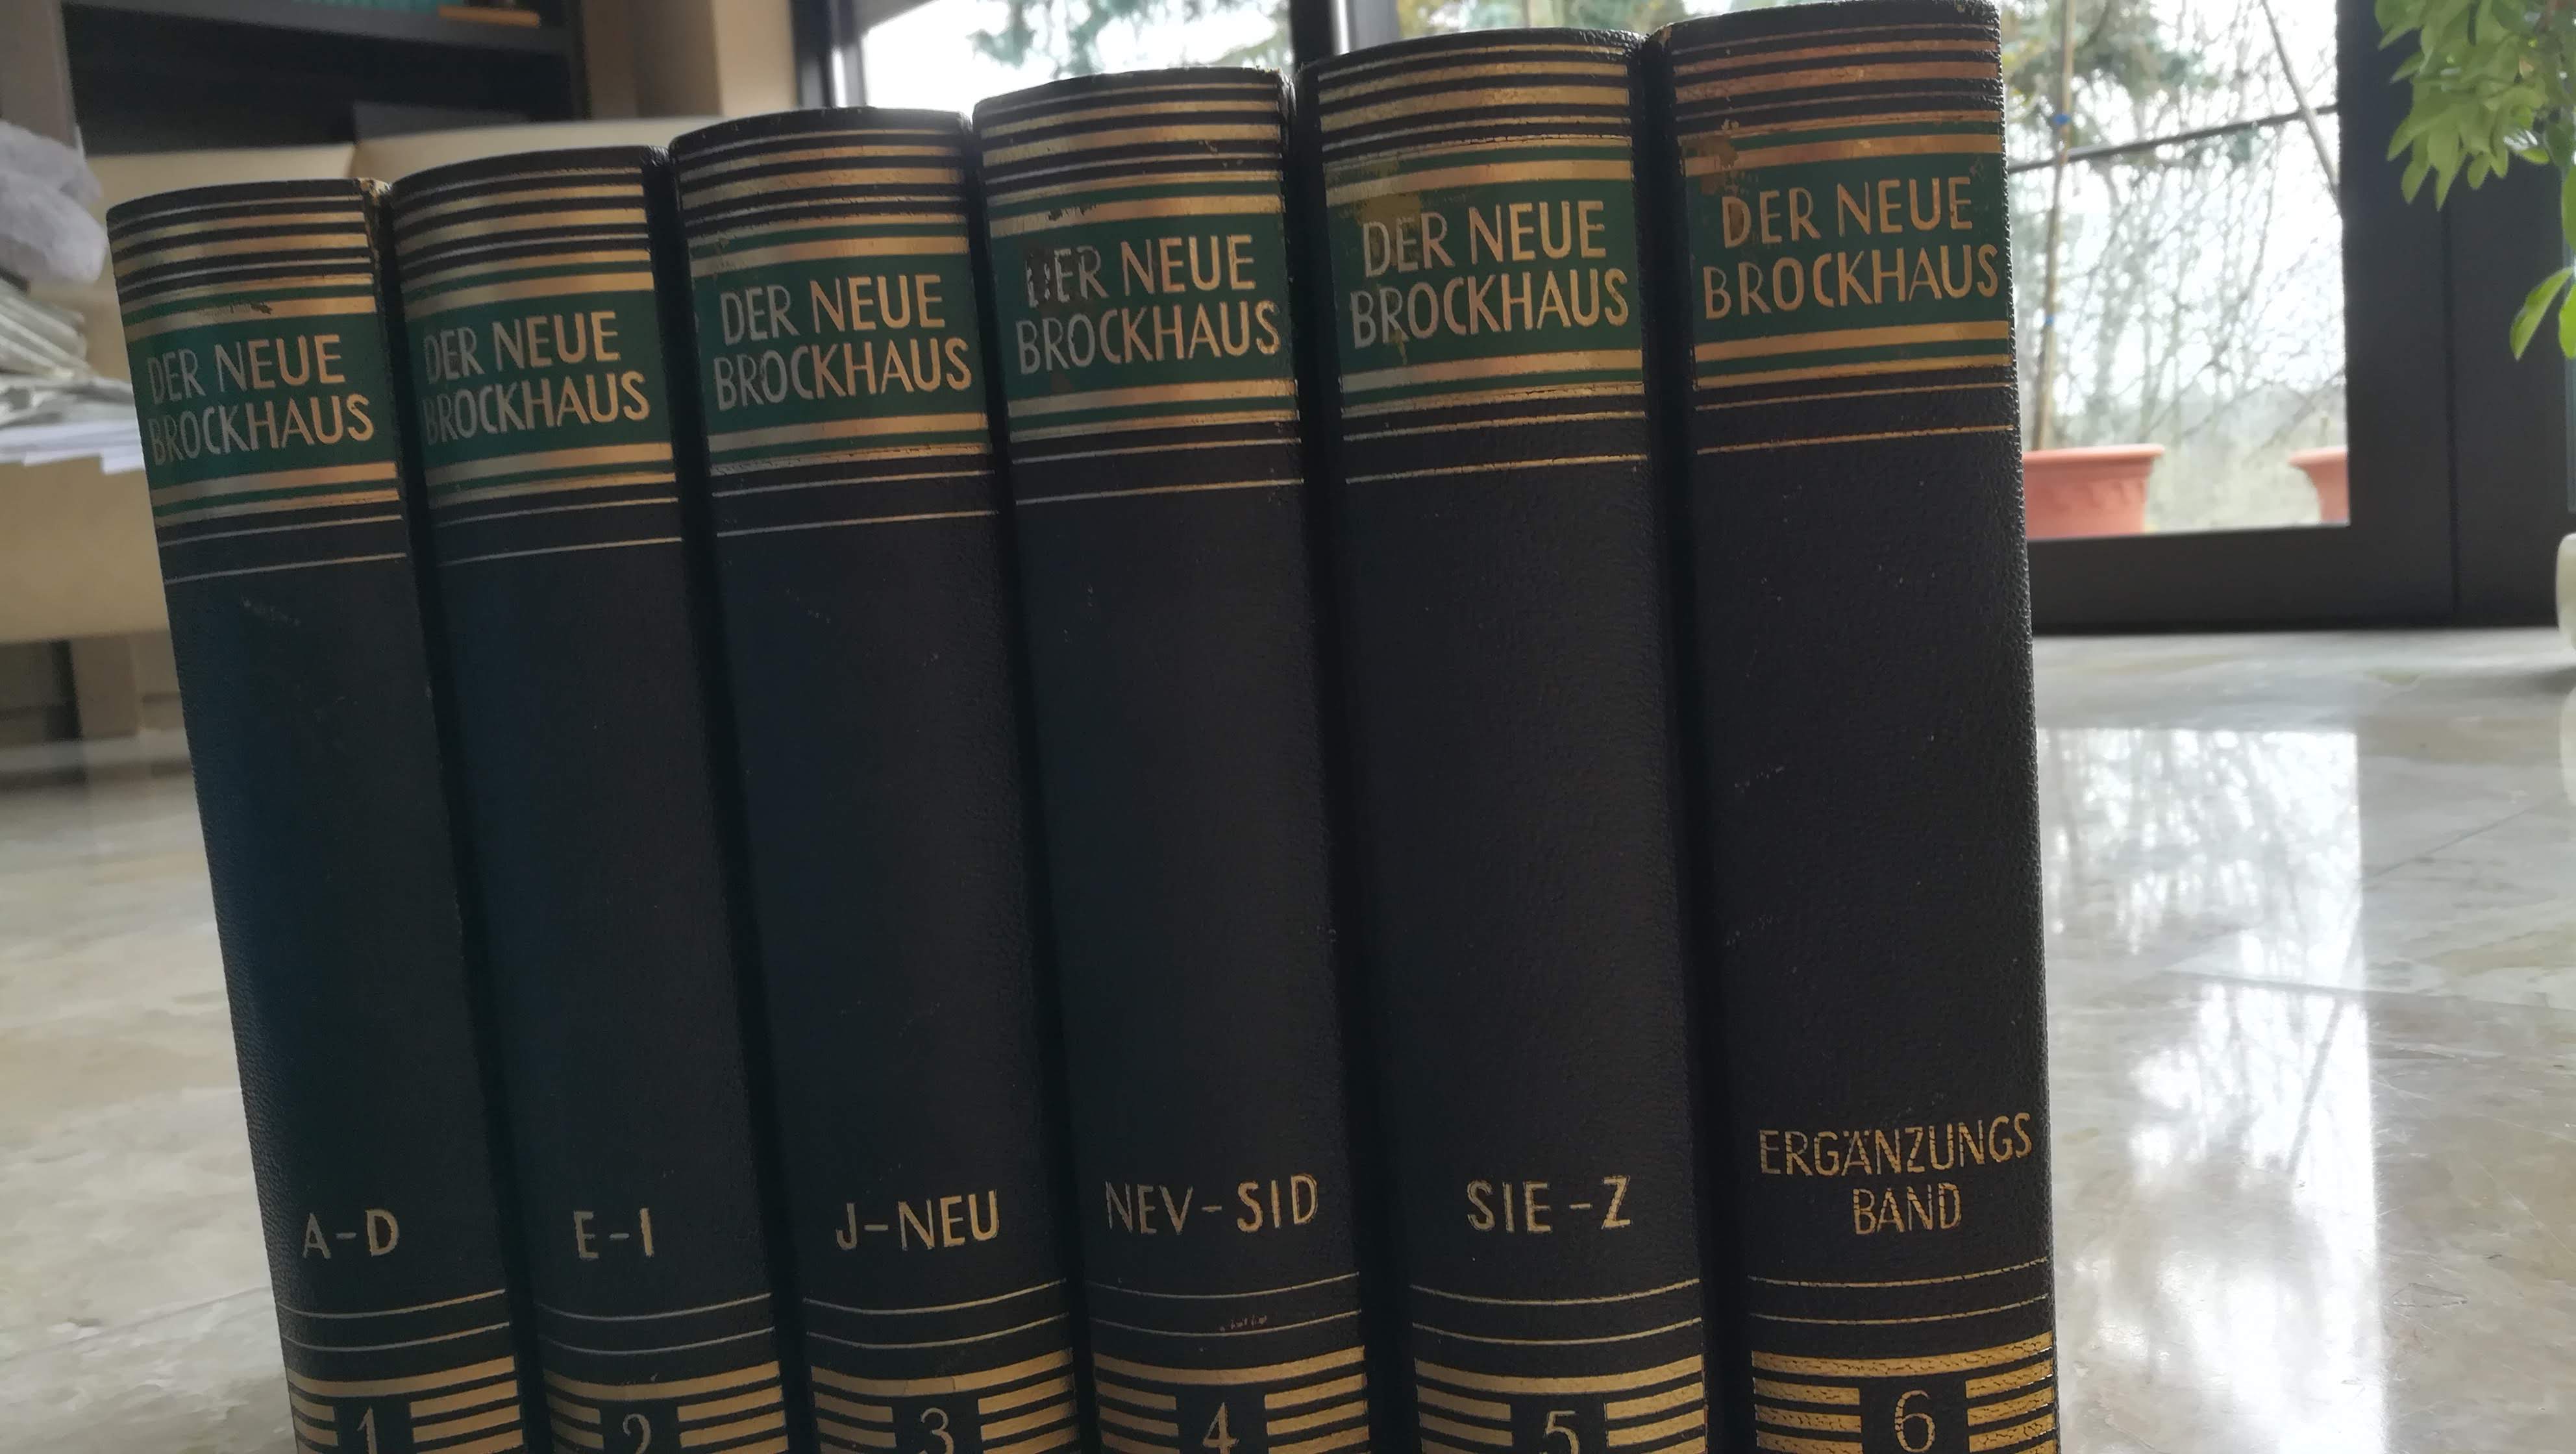   Der neue Brockhaus - Allbuch in fünf Bänden ohne den  Atlasband 